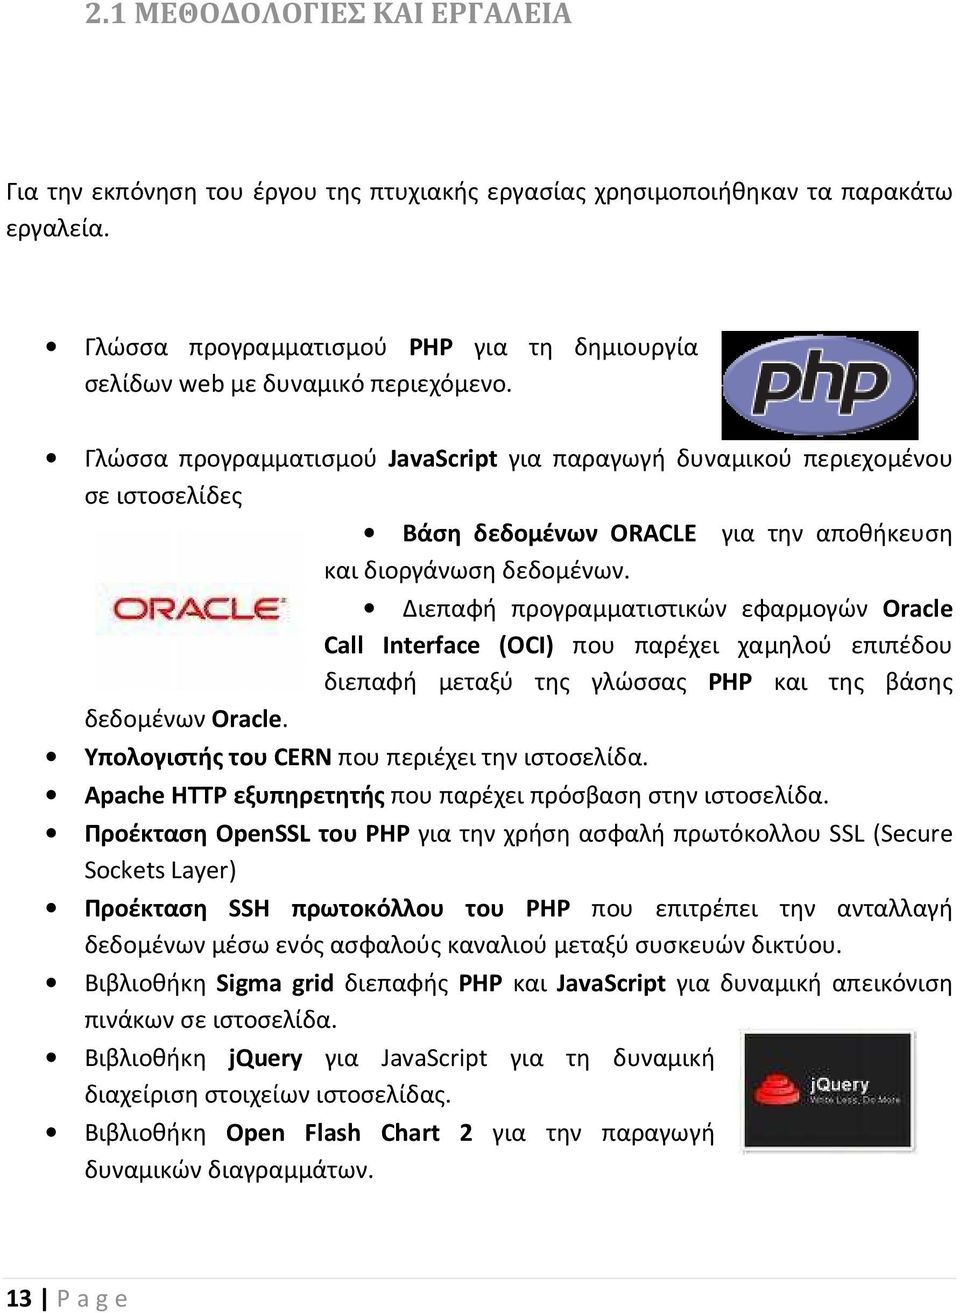 Διεπαφή προγραμματιστικών εφαρμογών Oracle Call Interface (OCI) που παρέχει χαμηλού επιπέδου διεπαφή μεταξύ της γλώσσας PHP και της βάσης Υπολογιστής του CERN που περιέχει την ιστοσελίδα.